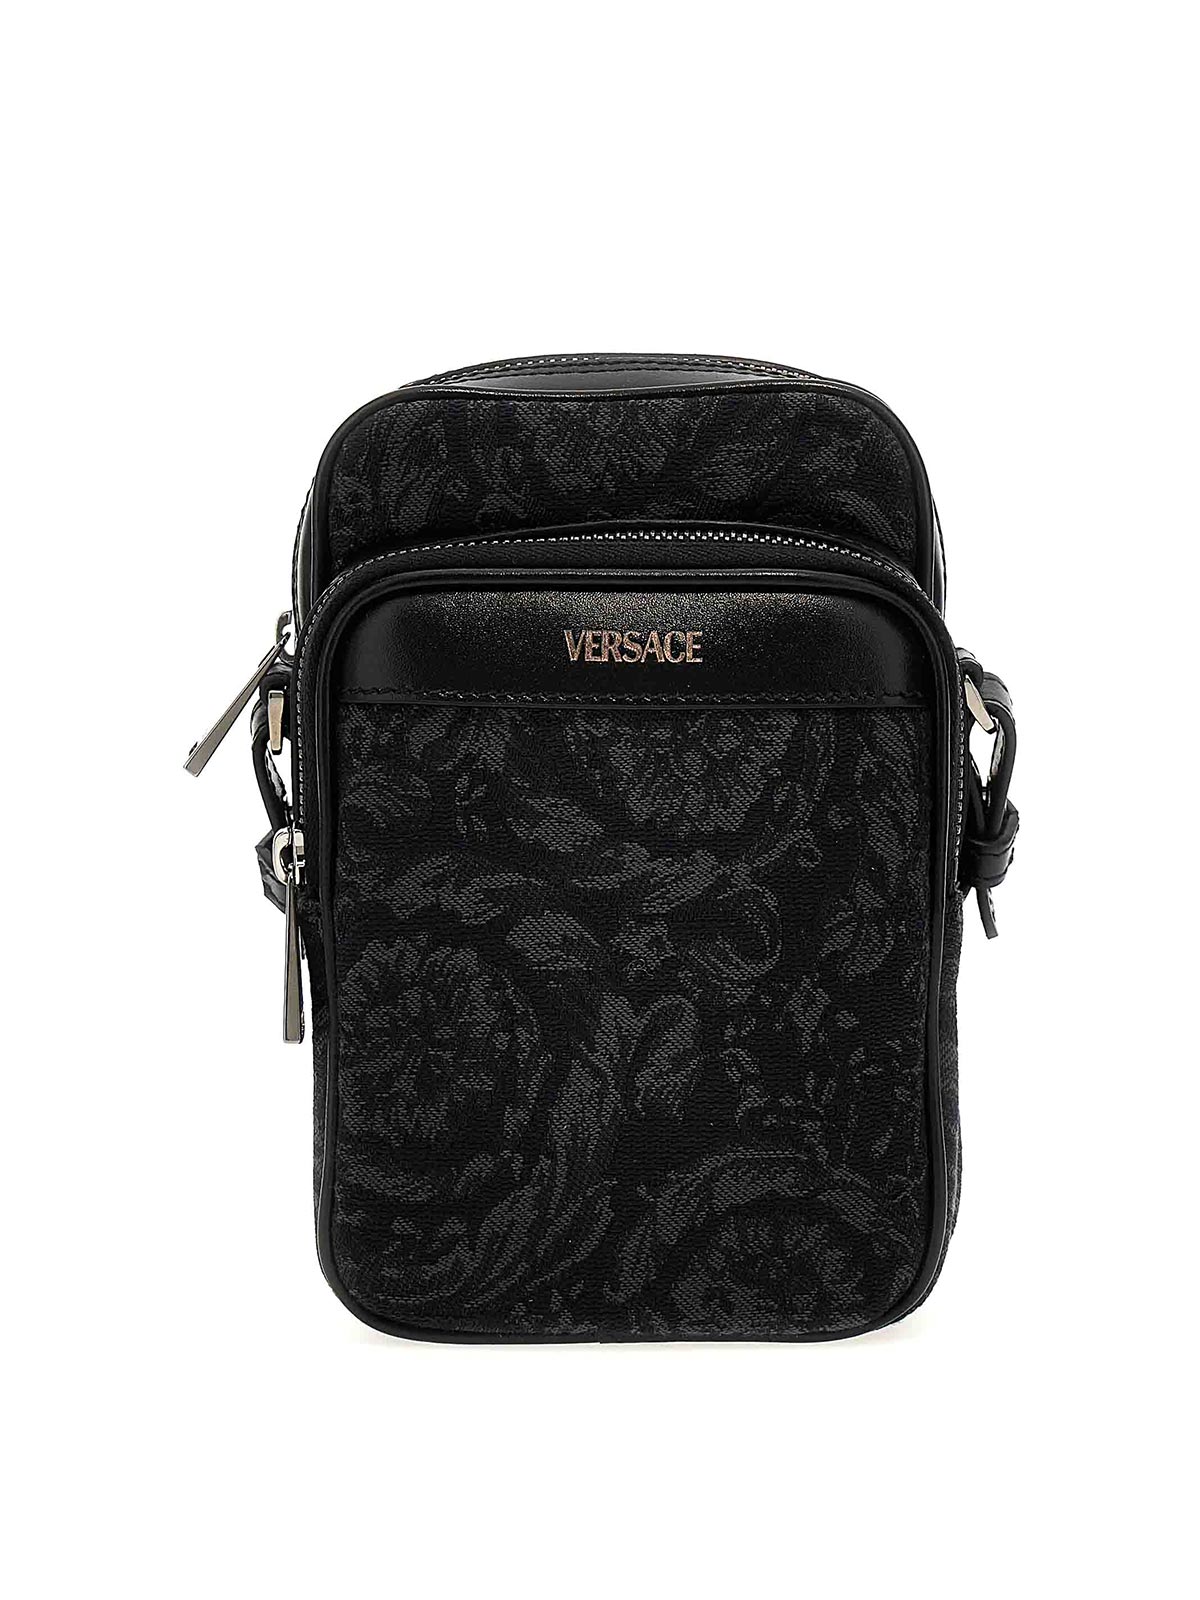 Versace Athena Barocco Crossbody Bag In Black